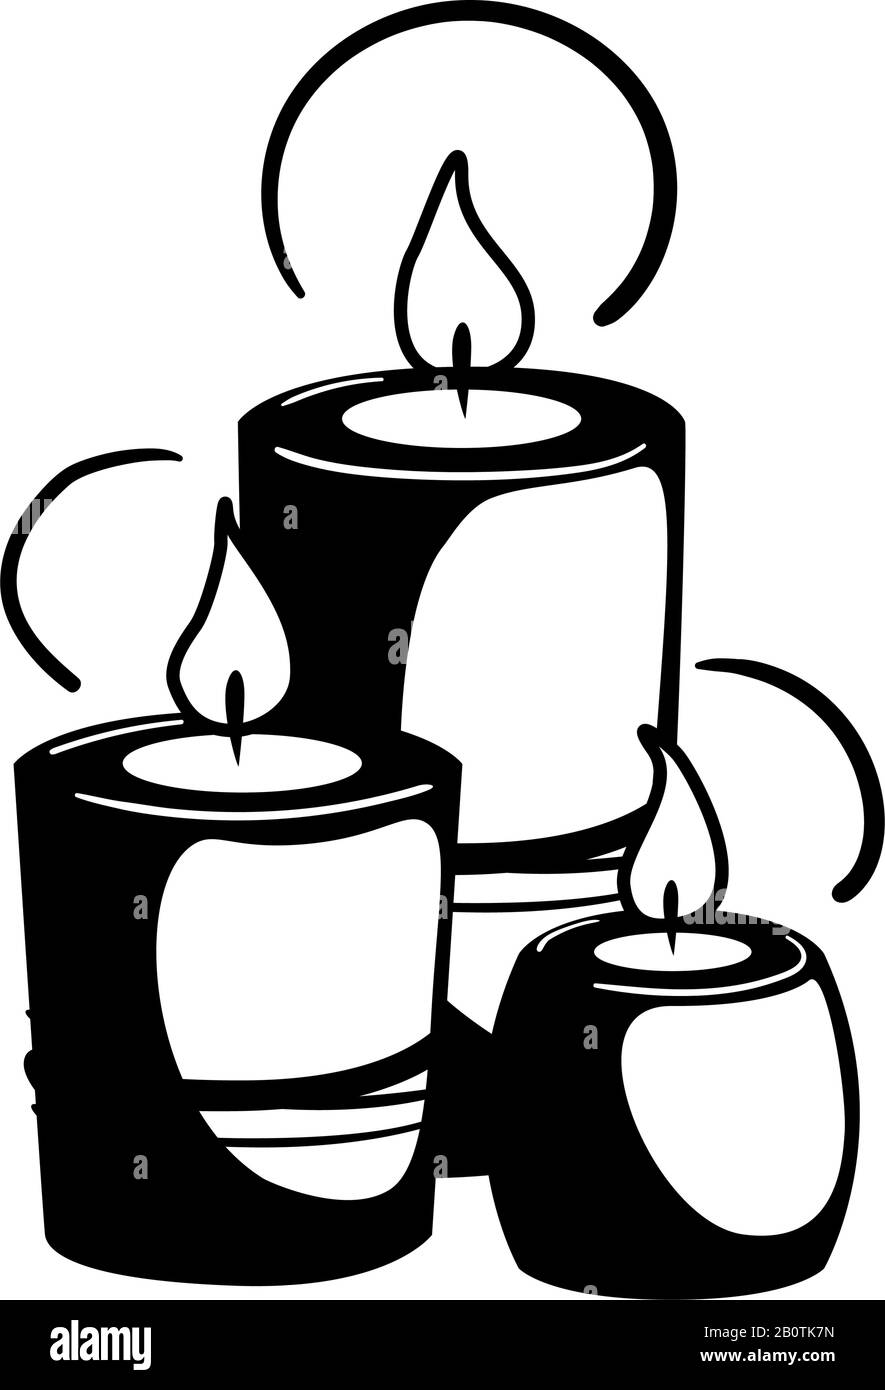 Glyphe drei Kerzen Spa für Web-Design. Urlaub Feier Entspannung schwarze Silhouette Konzept. Piktogramm Für Aromatische Vektoren im Gesundheitswesen auf isoliertem Weiß. Logo für die Feuermeditation - Symboldekoration. Stock Vektor